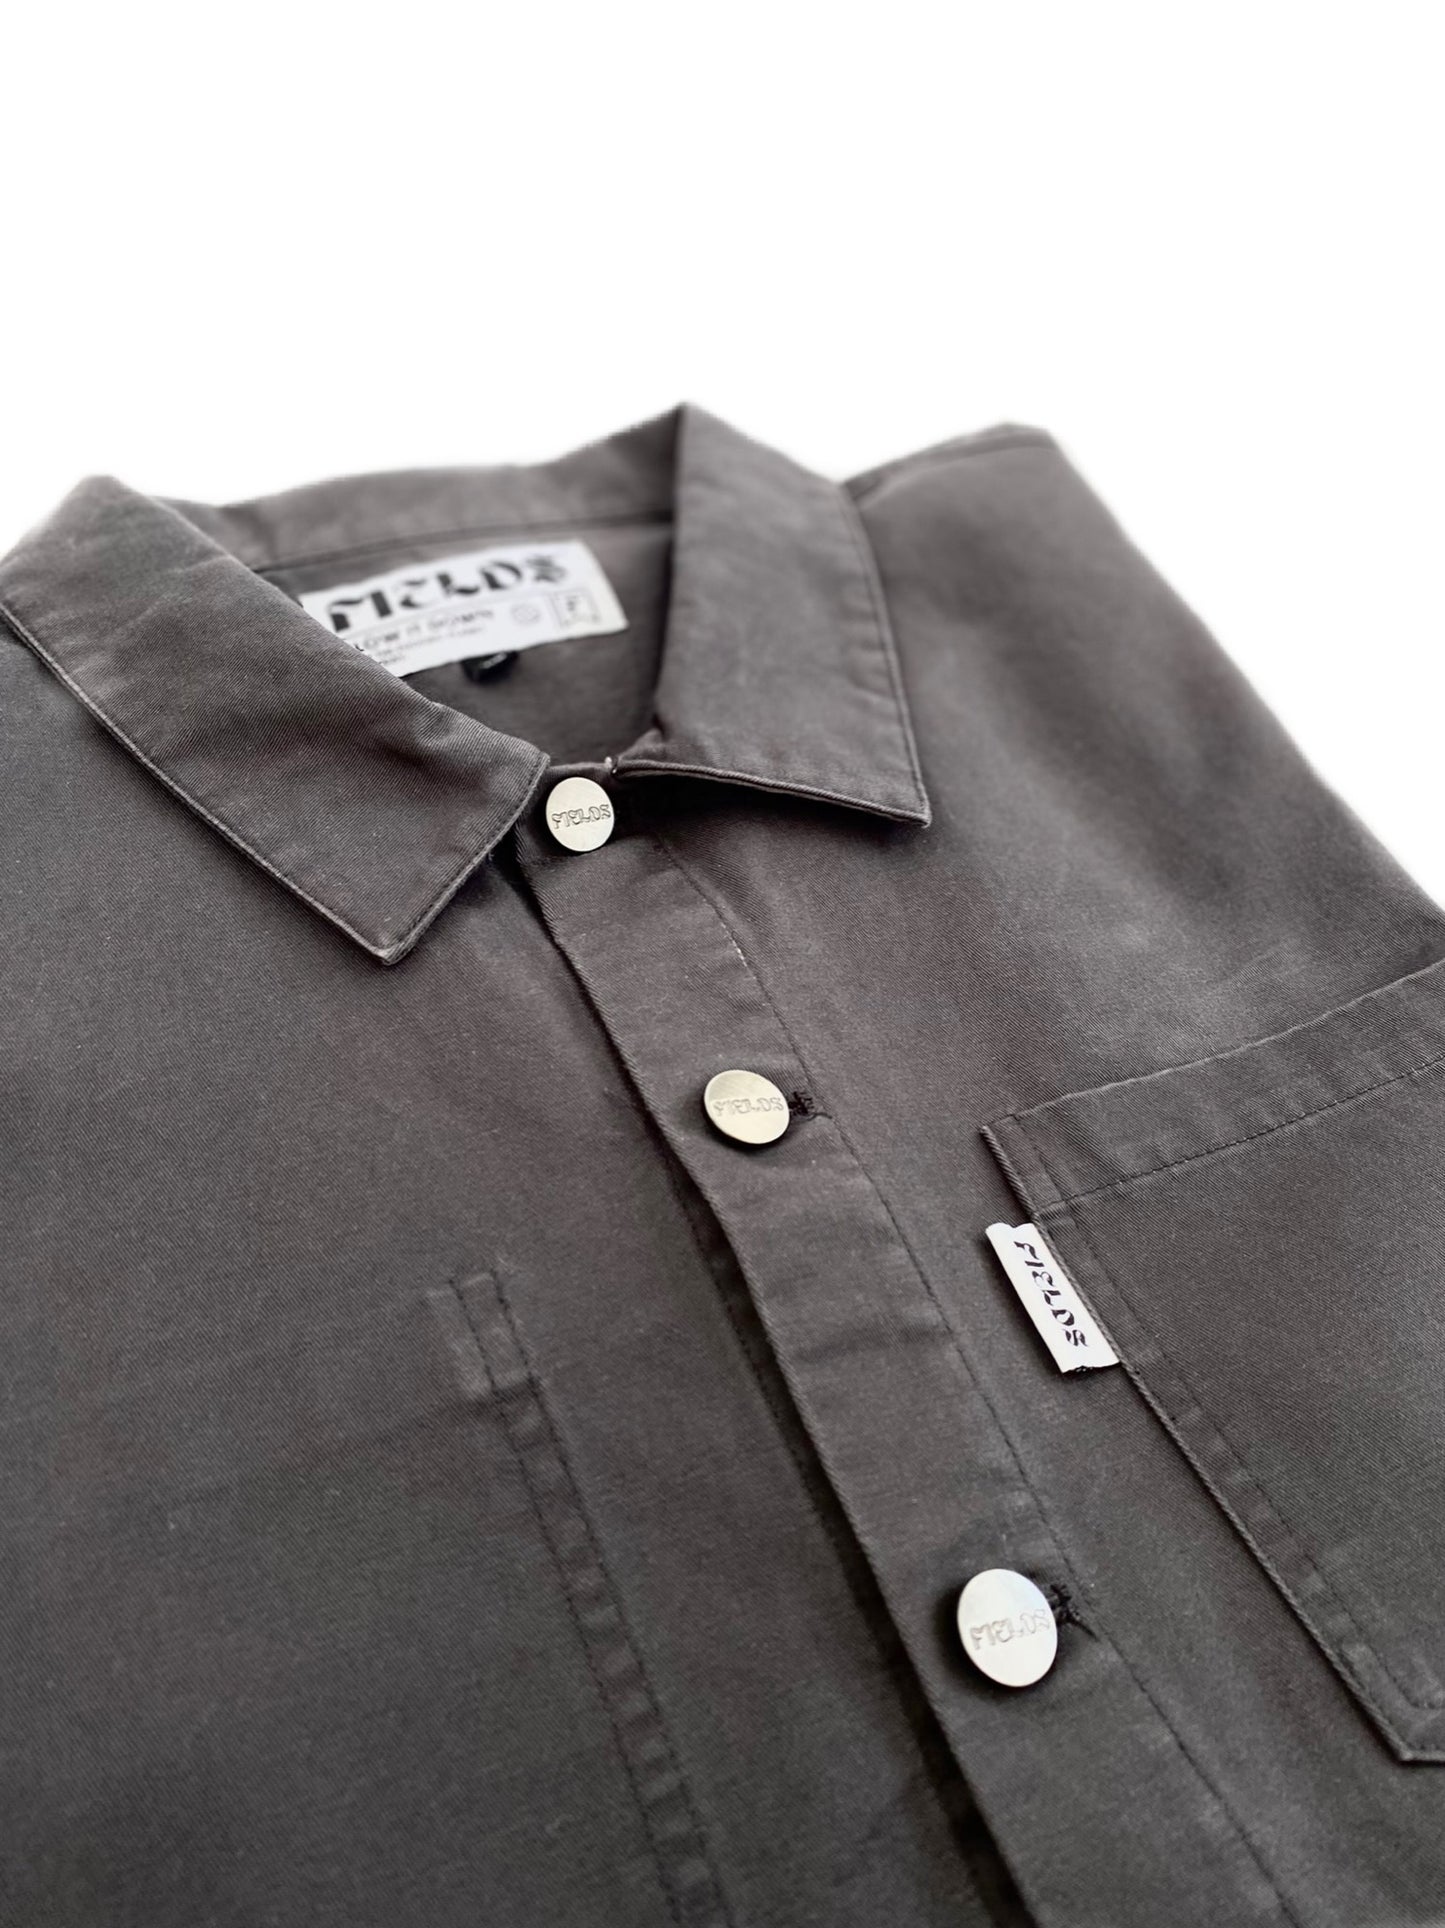 Small Batch Organic Cotton Jacket/Overshirt